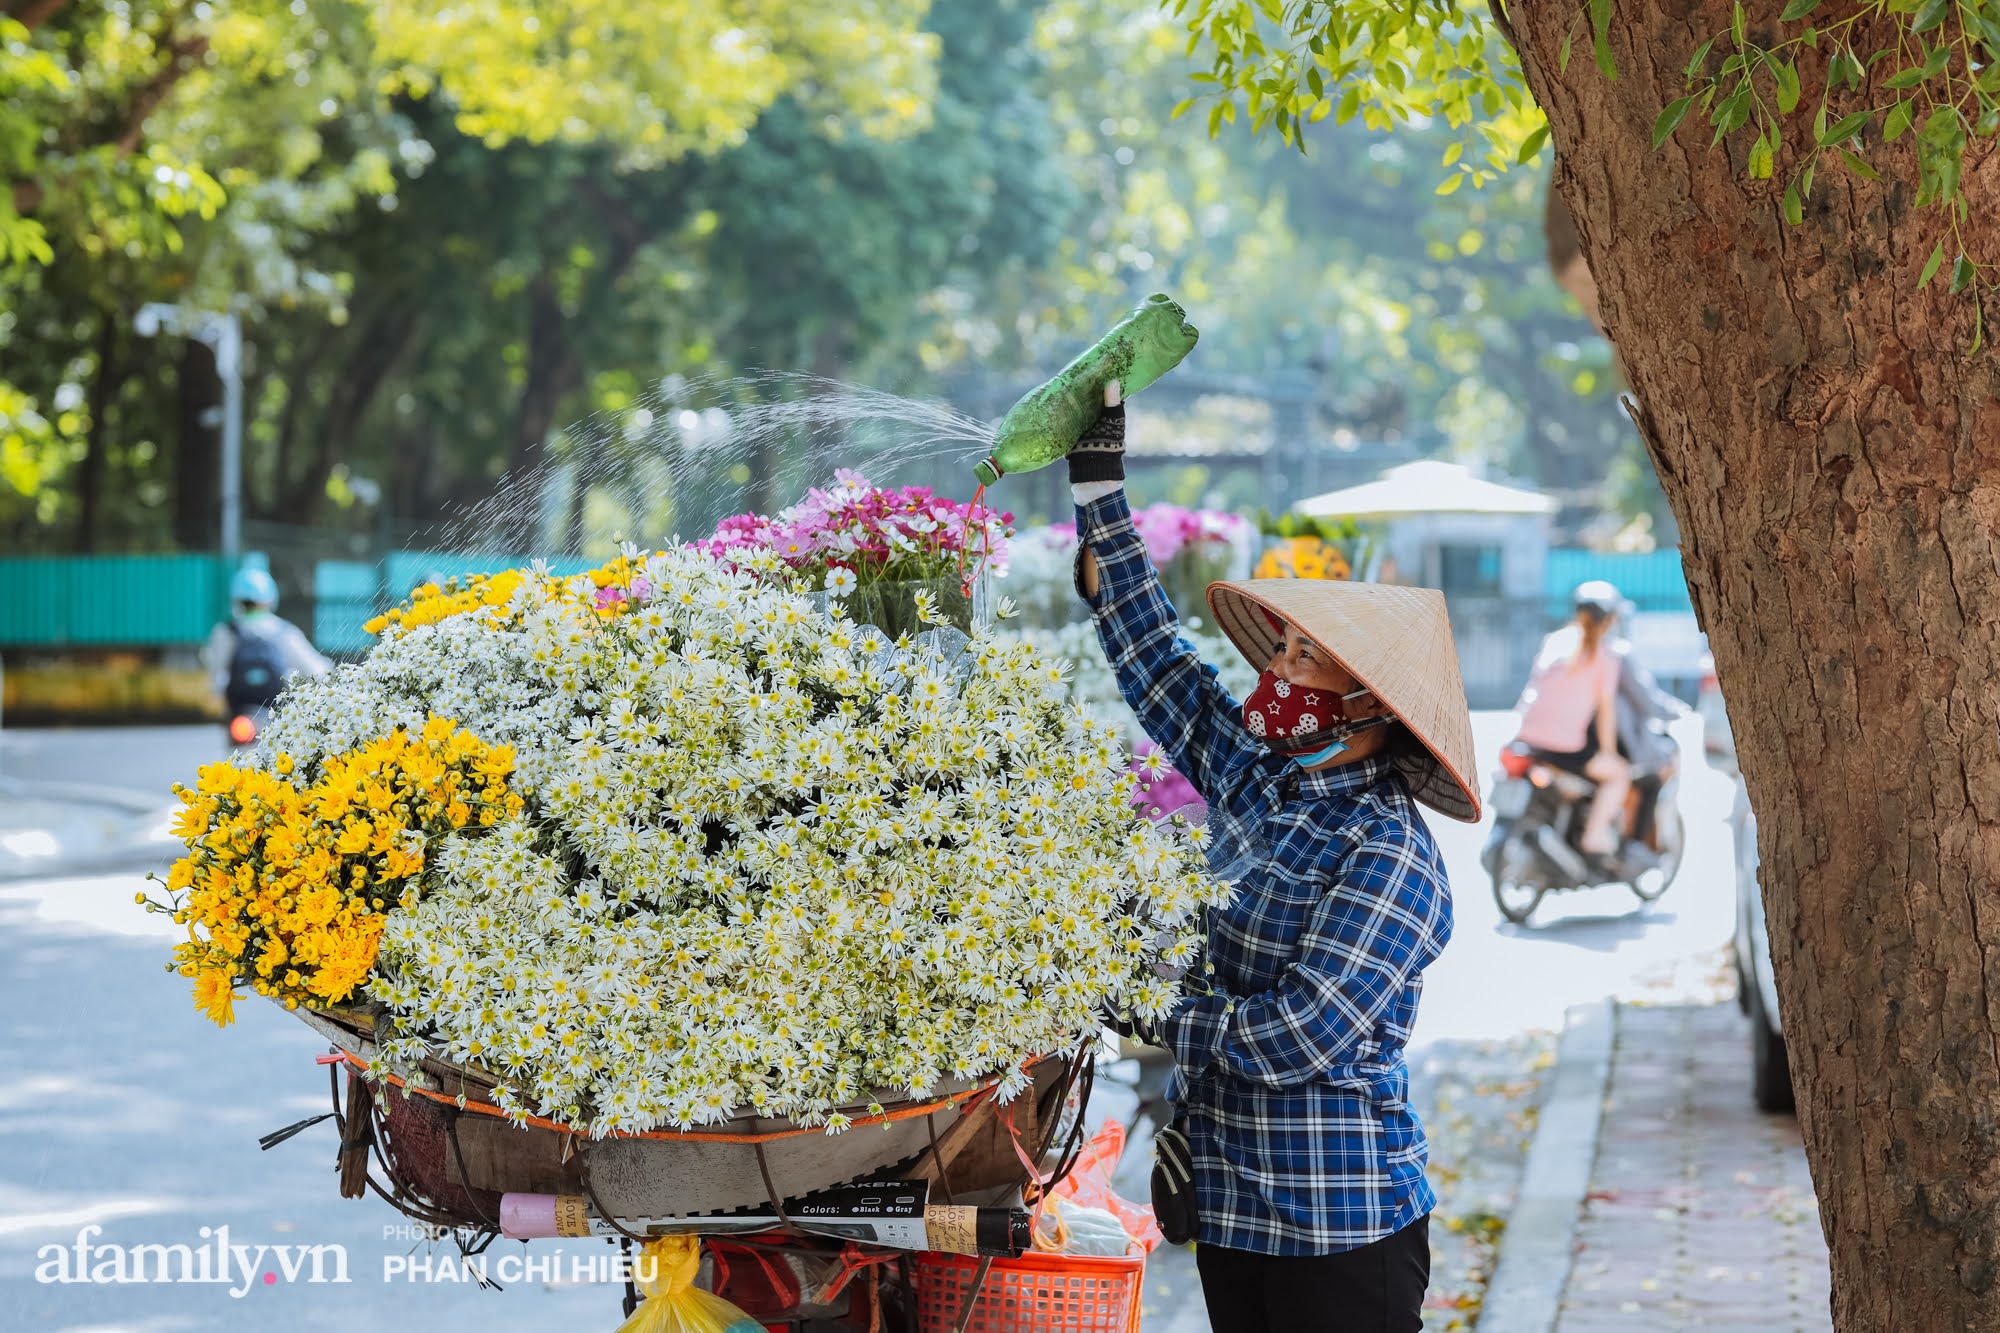 Đến hẹn lại lên, phố phường Hà Nội ngập tràn cúc họa mi, nhiều người tranh thủ lưu lại khoảnh khắc với mùa thu - Ảnh 2.